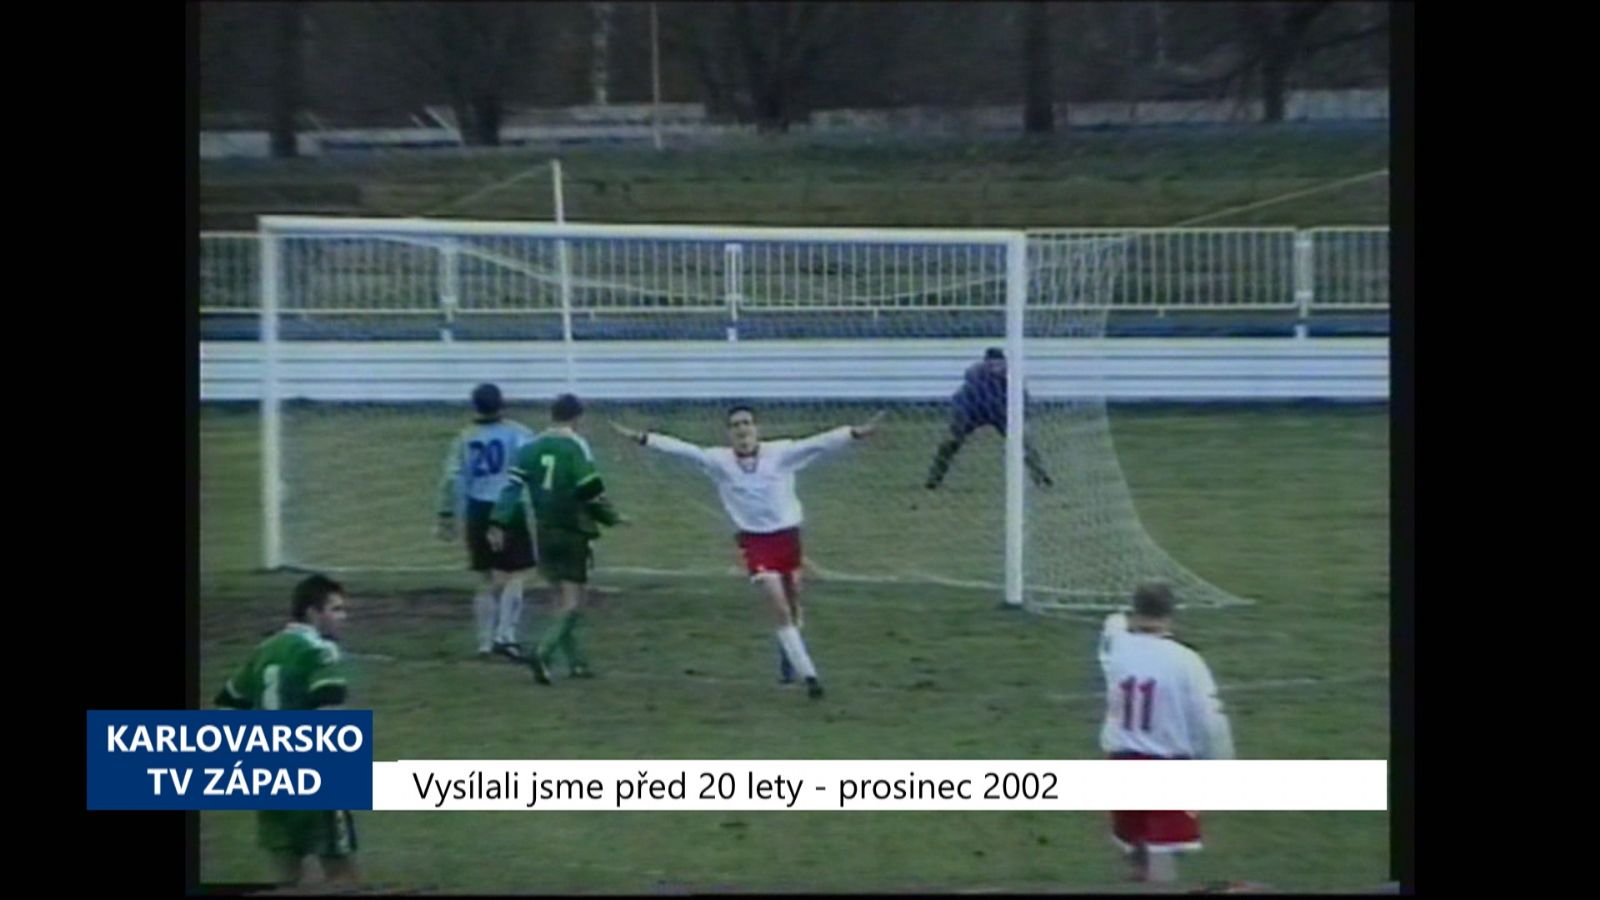 2002 – Cheb: Union přehrál Františkovy Lázně 4:0 (TV Západ)